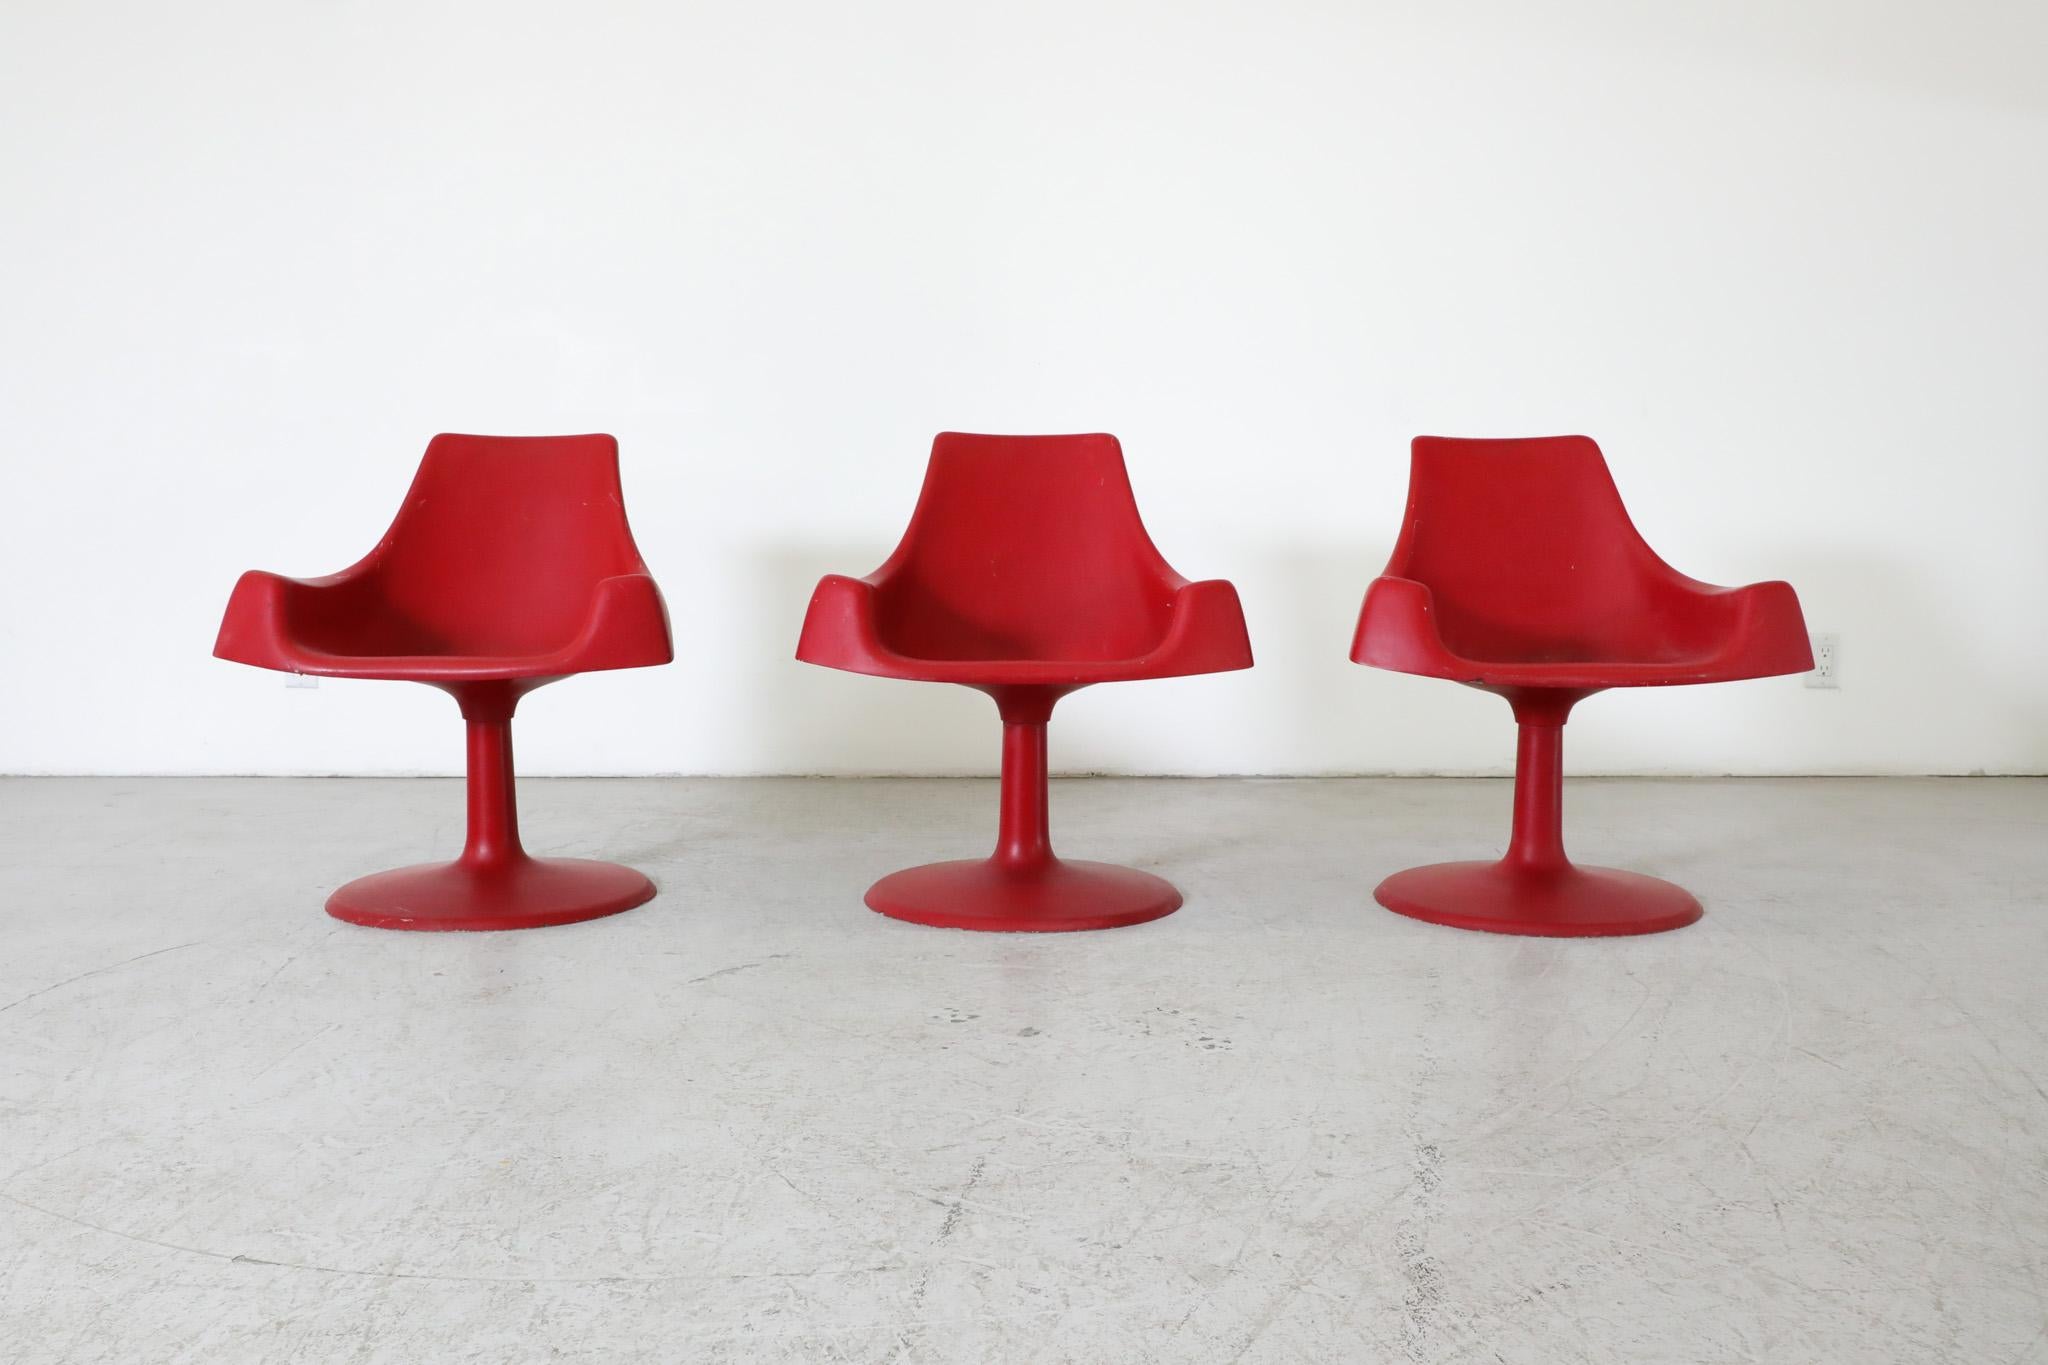 Von Eero Saarinen inspirierte Sessel aus rotem Kunststoff mit festem Sockel, die sich an das Weltraumzeitalter anlehnen. In ursprünglichem Zustand mit sichtbaren Abnutzungserscheinungen, die dem Alter und dem Gebrauch entsprechen. drei Stück